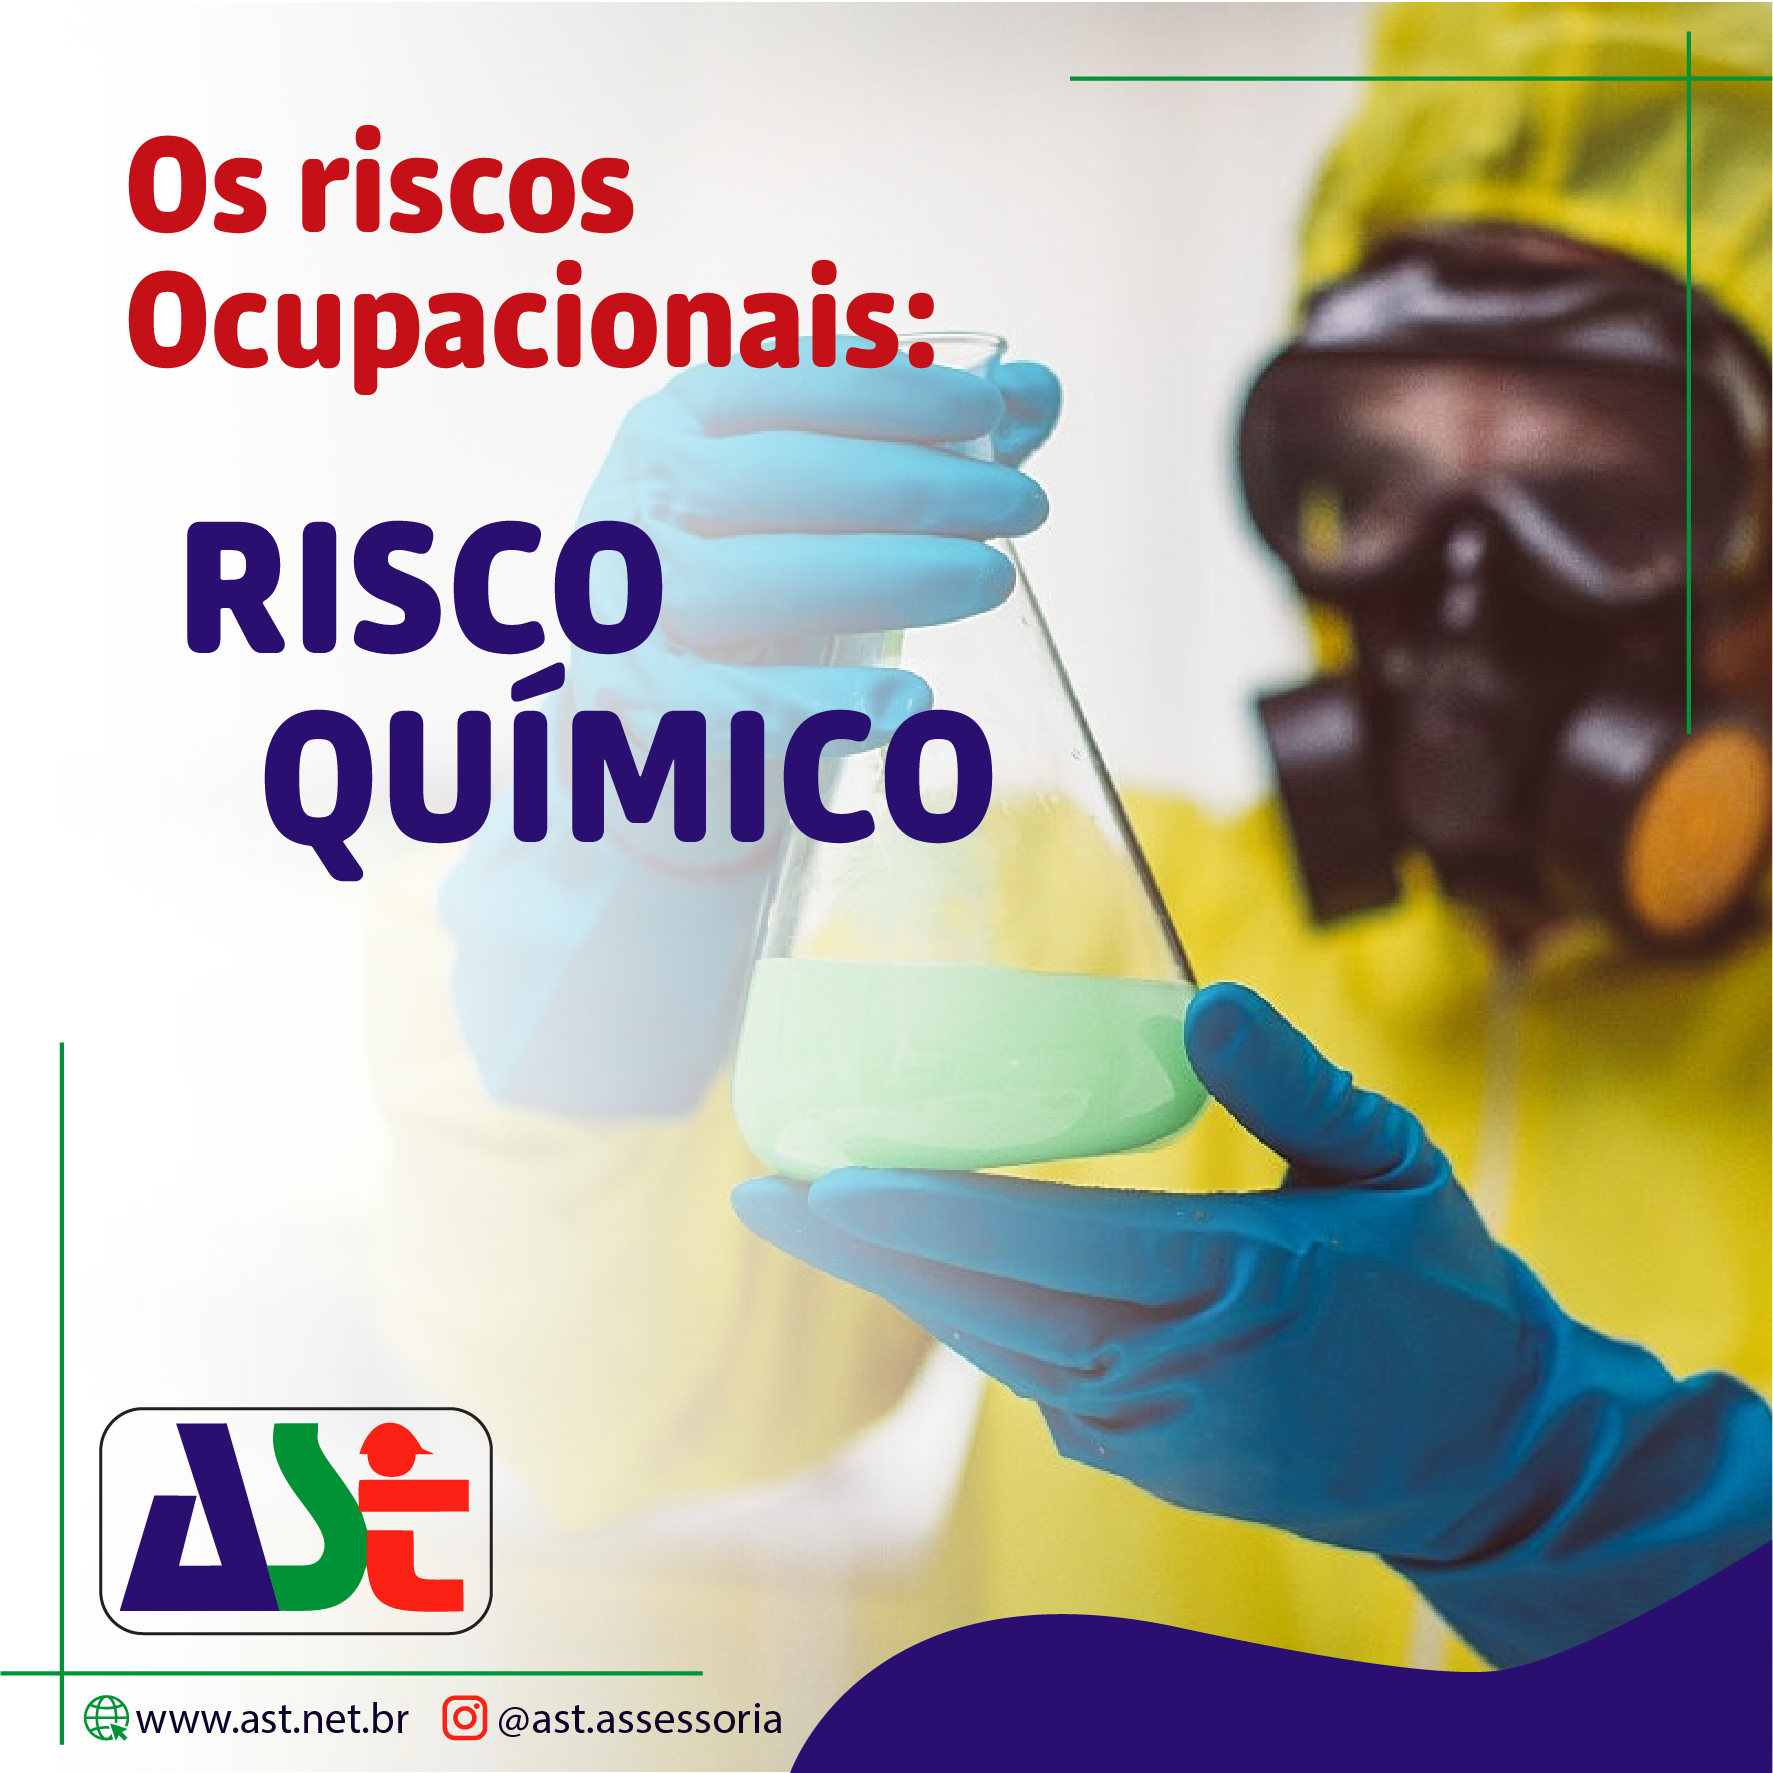 Riscos Ocupacionais/ Químicos